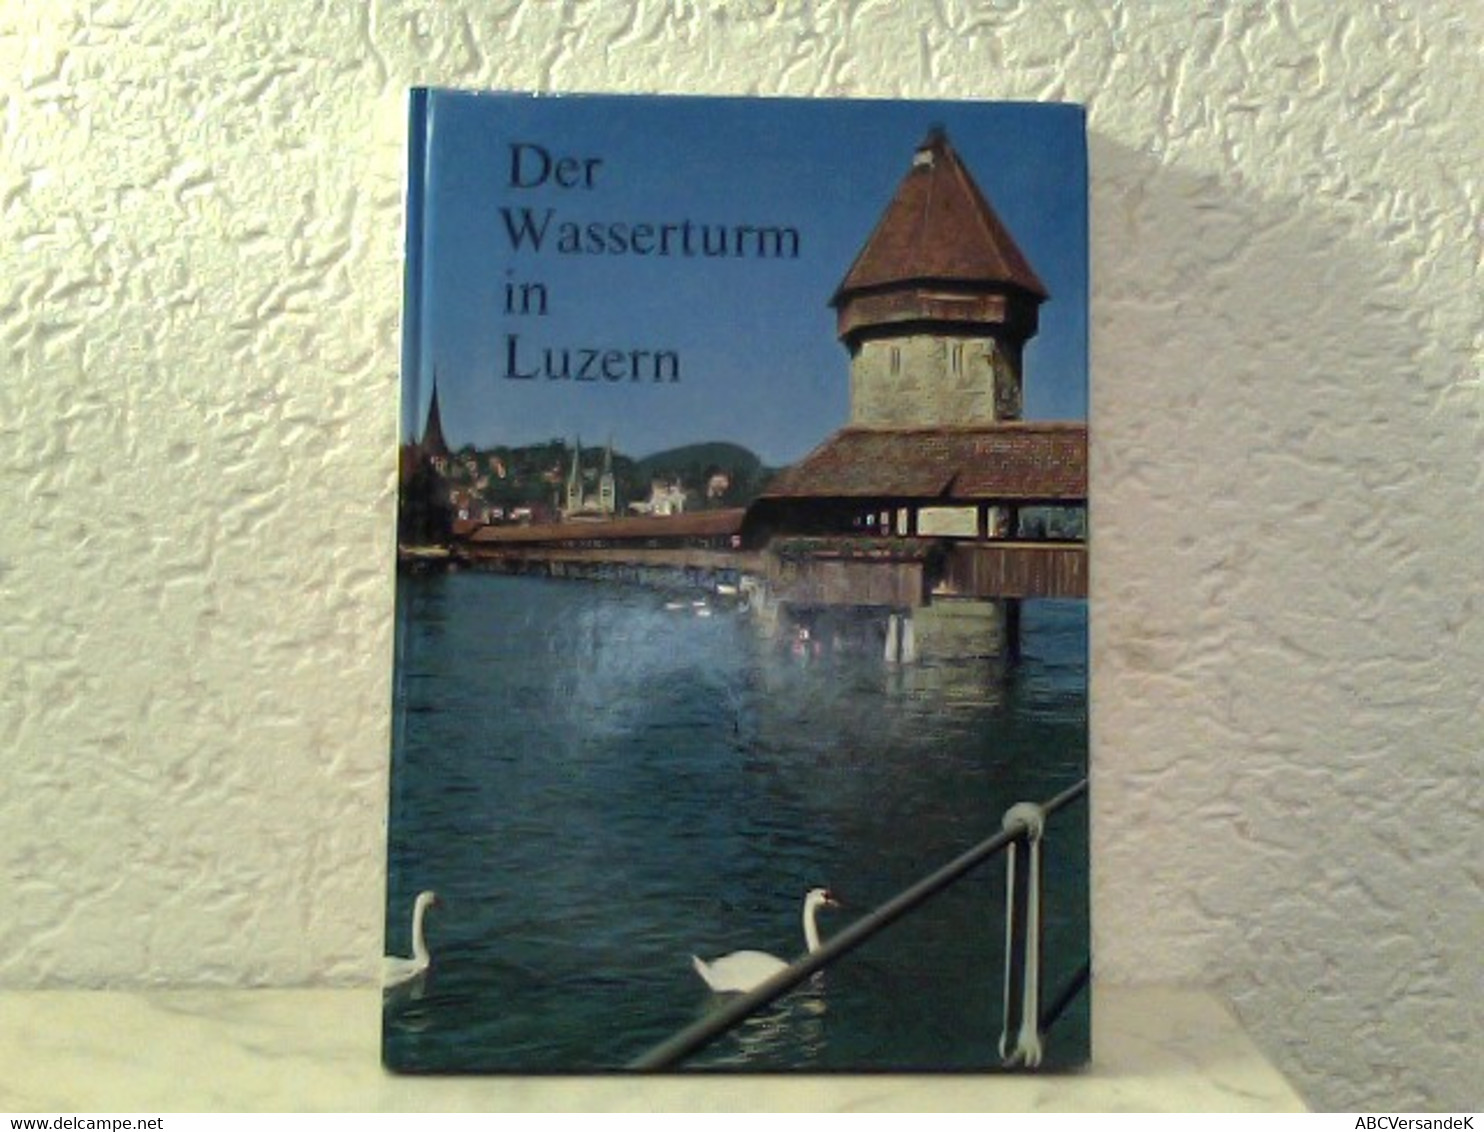 Der Wasserturm In Luzern - Herausgegeben Als Beitrag Zur 800 - Jahr - Feier Der Stadt Luzern - Suiza